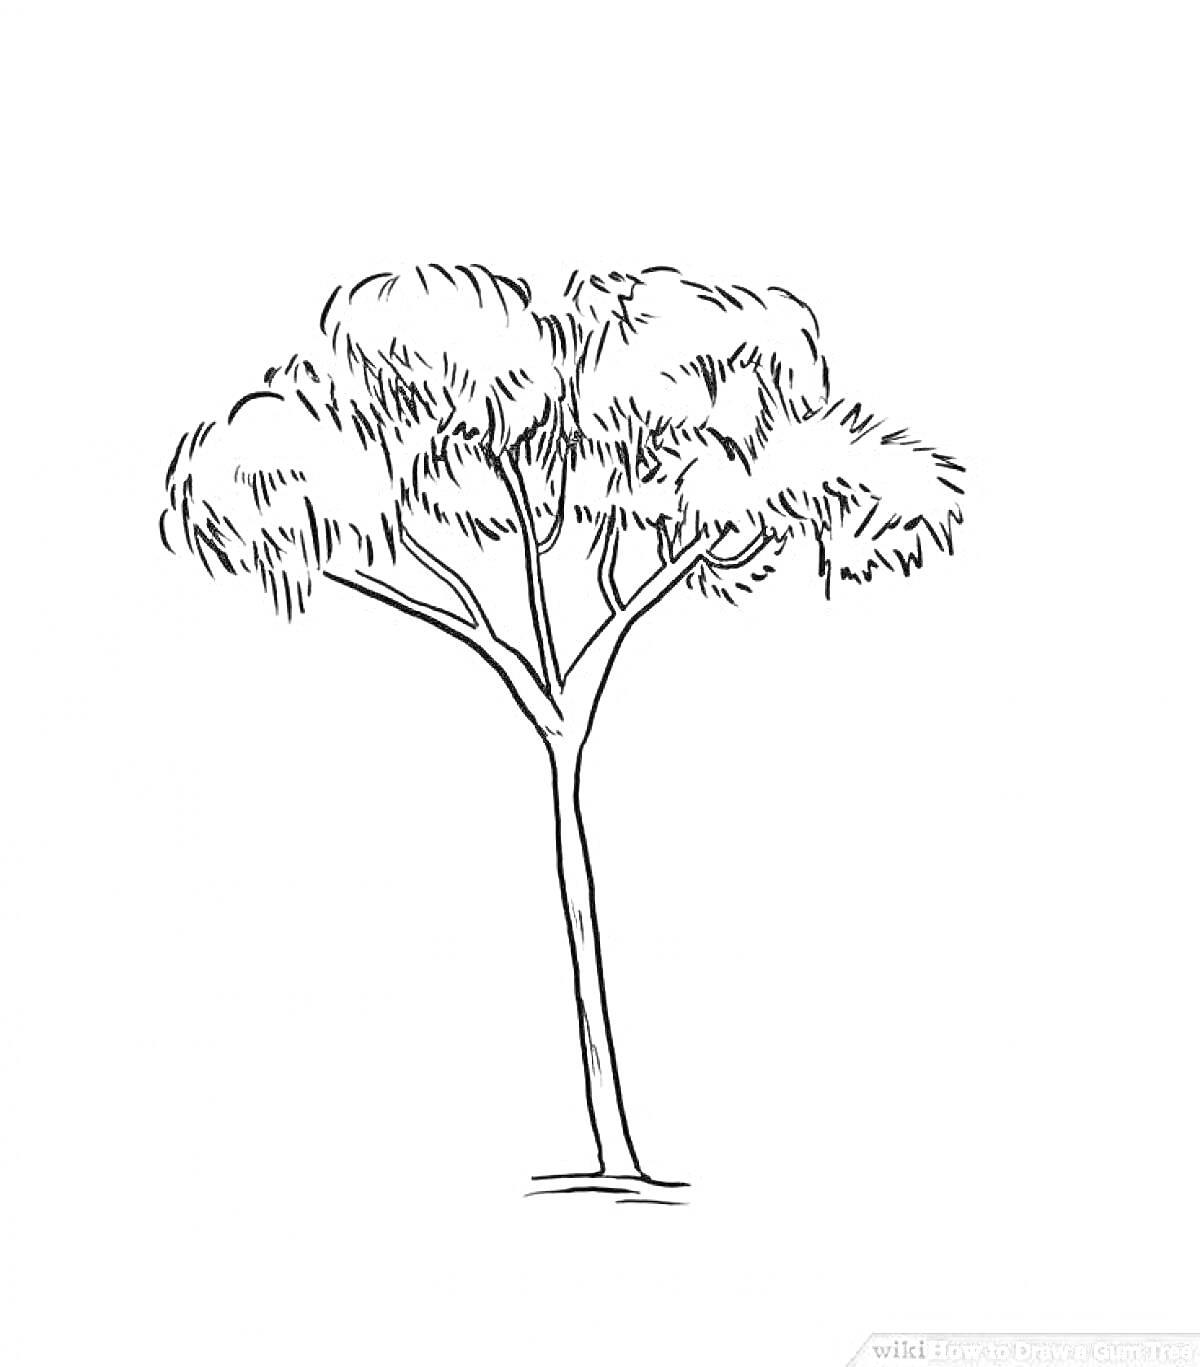 Эвкалипт: одиночное дерево с густой кроной и длинным стволом